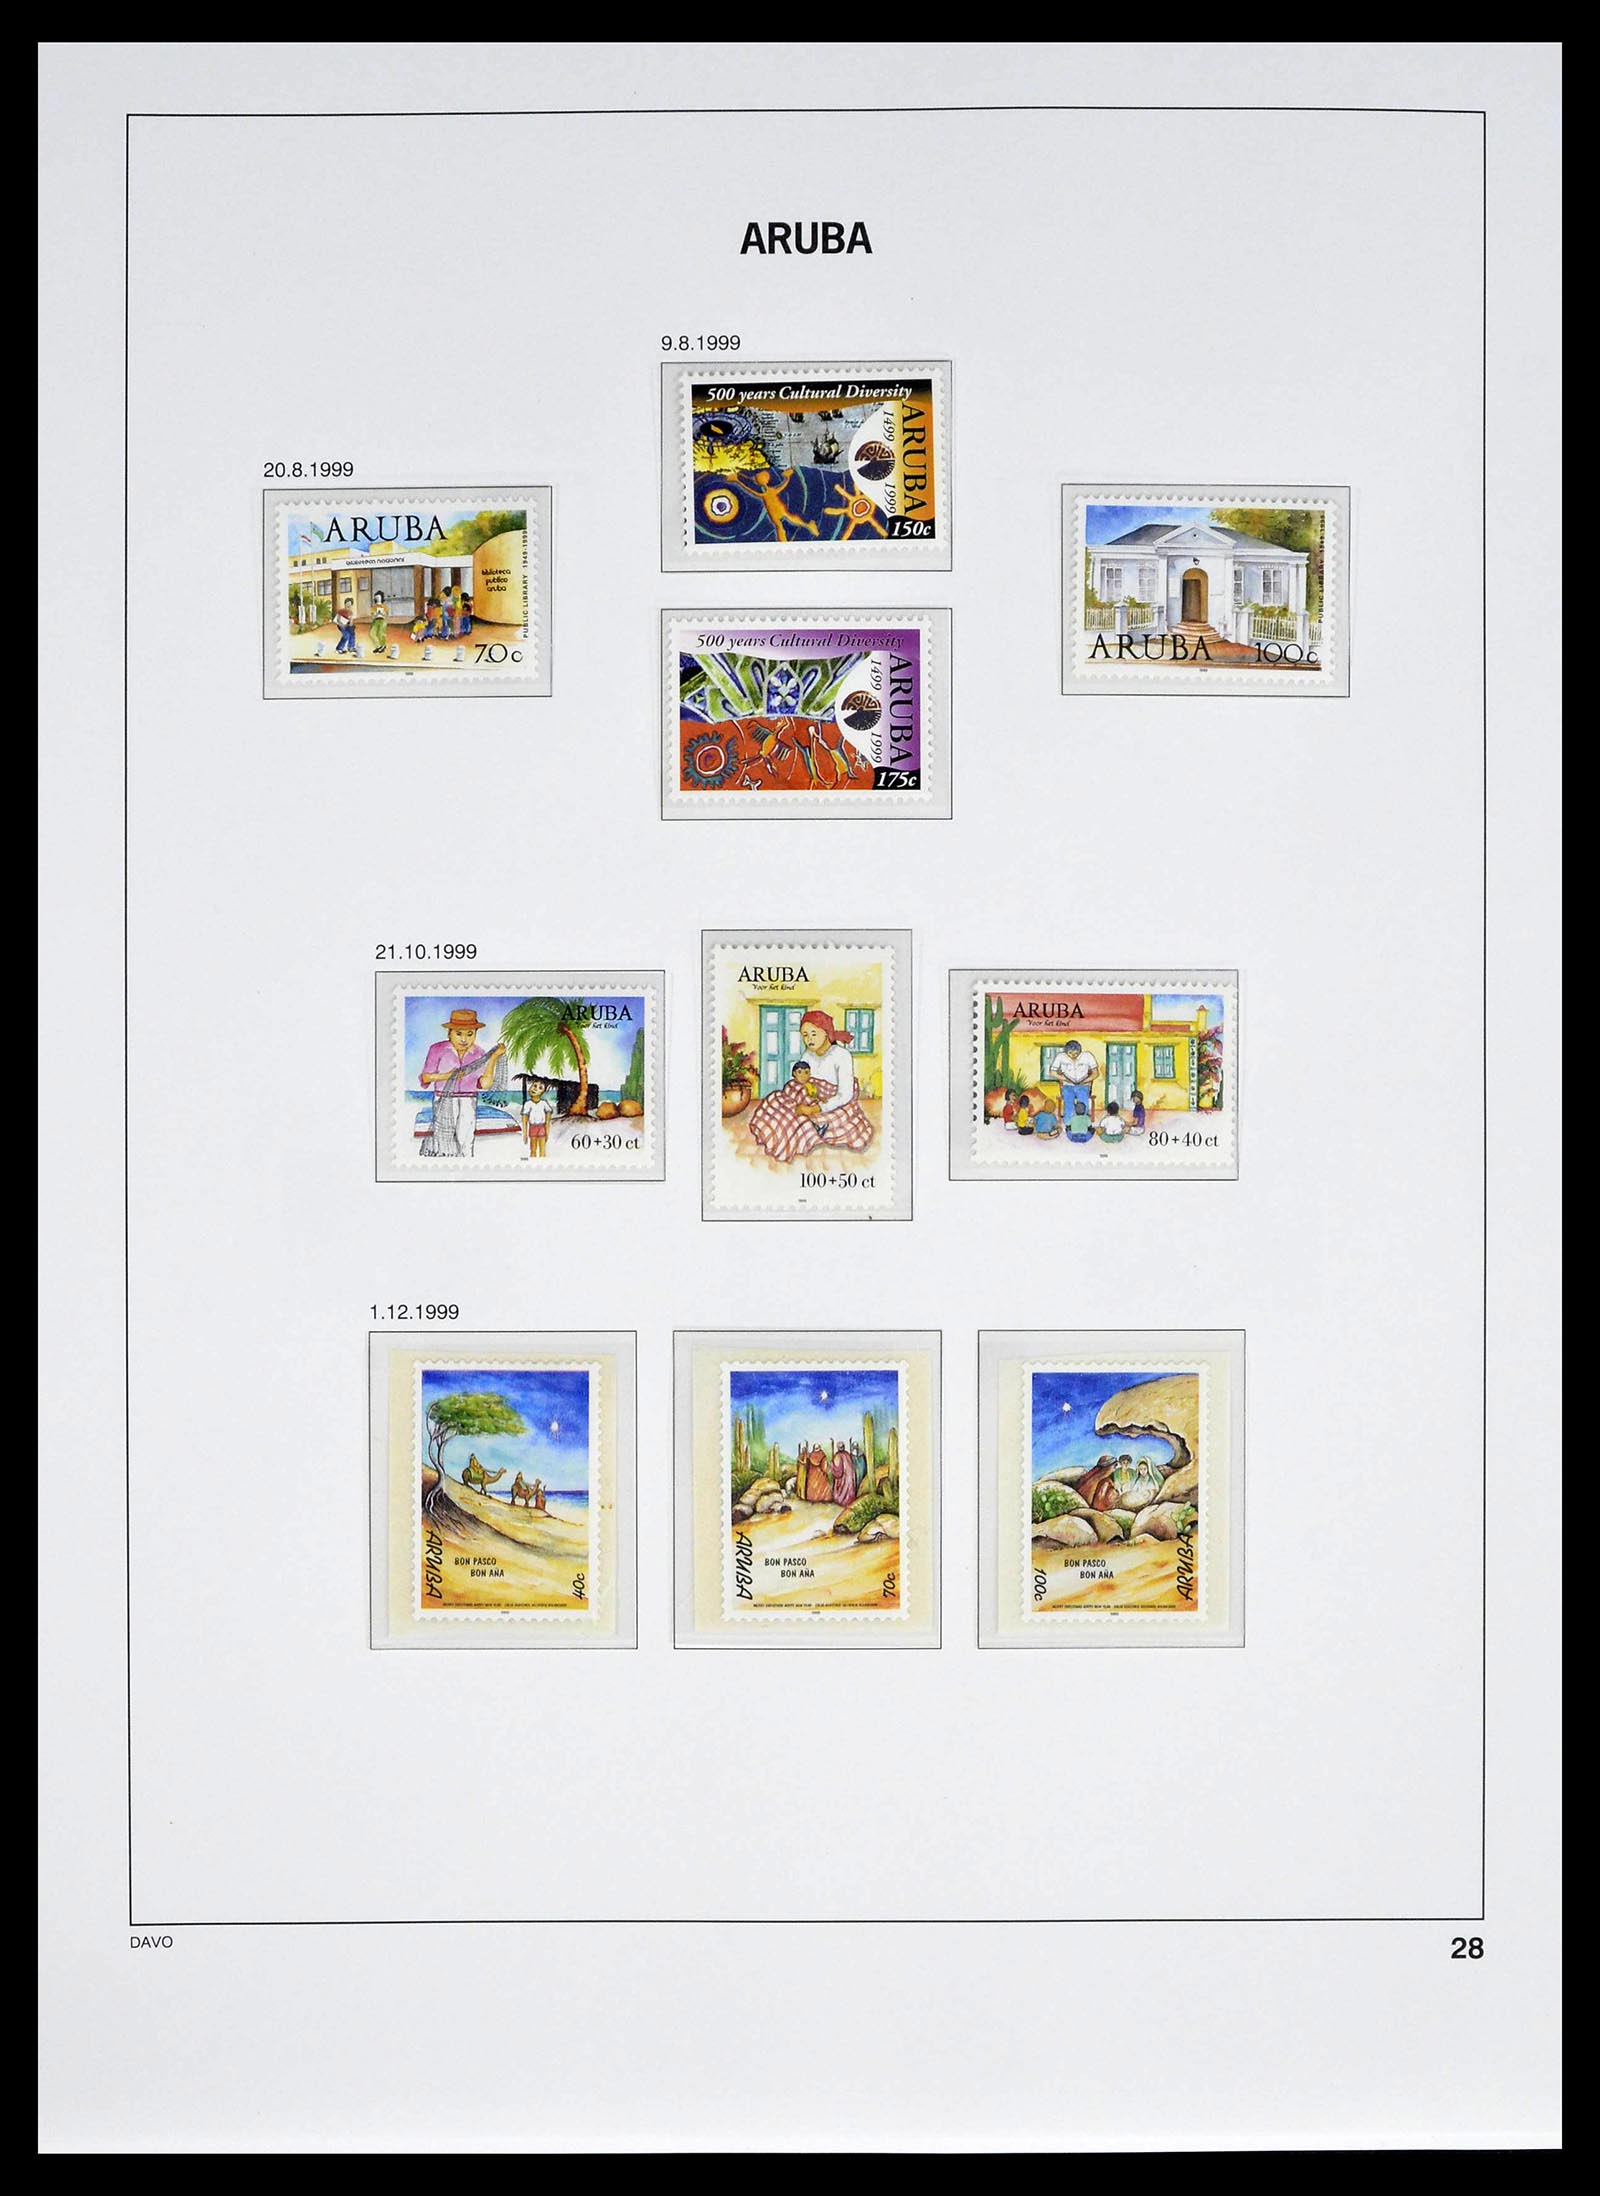 39361 0028 - Stamp collection 39361 Aruba 1986-2013.